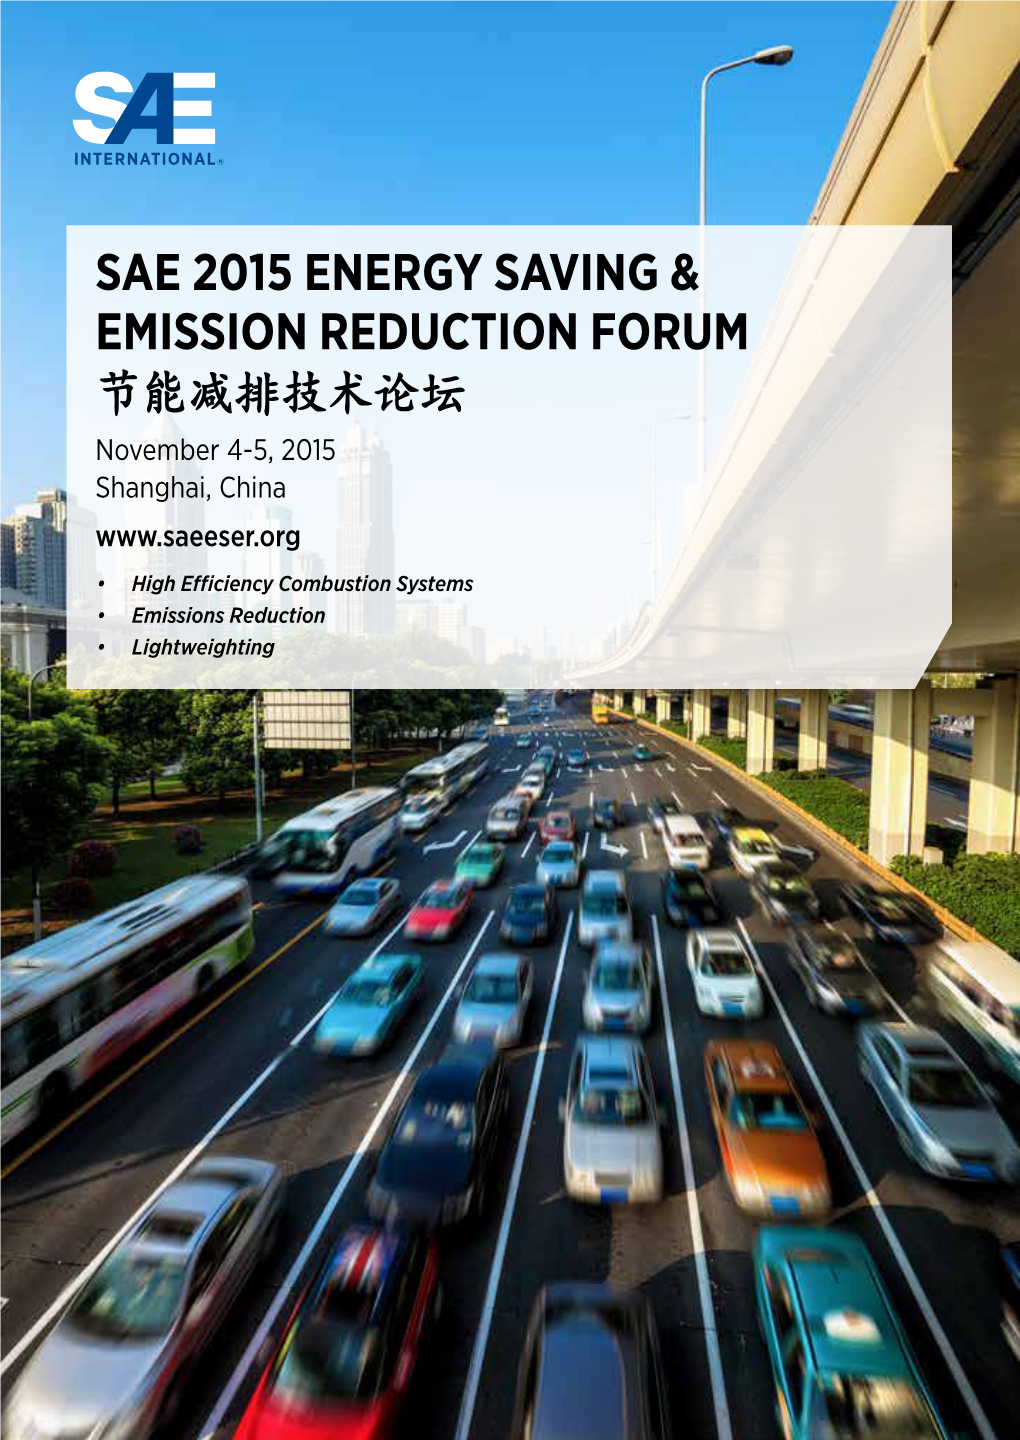 Sae 2015 Energy Saving & Emission Reduction Forum